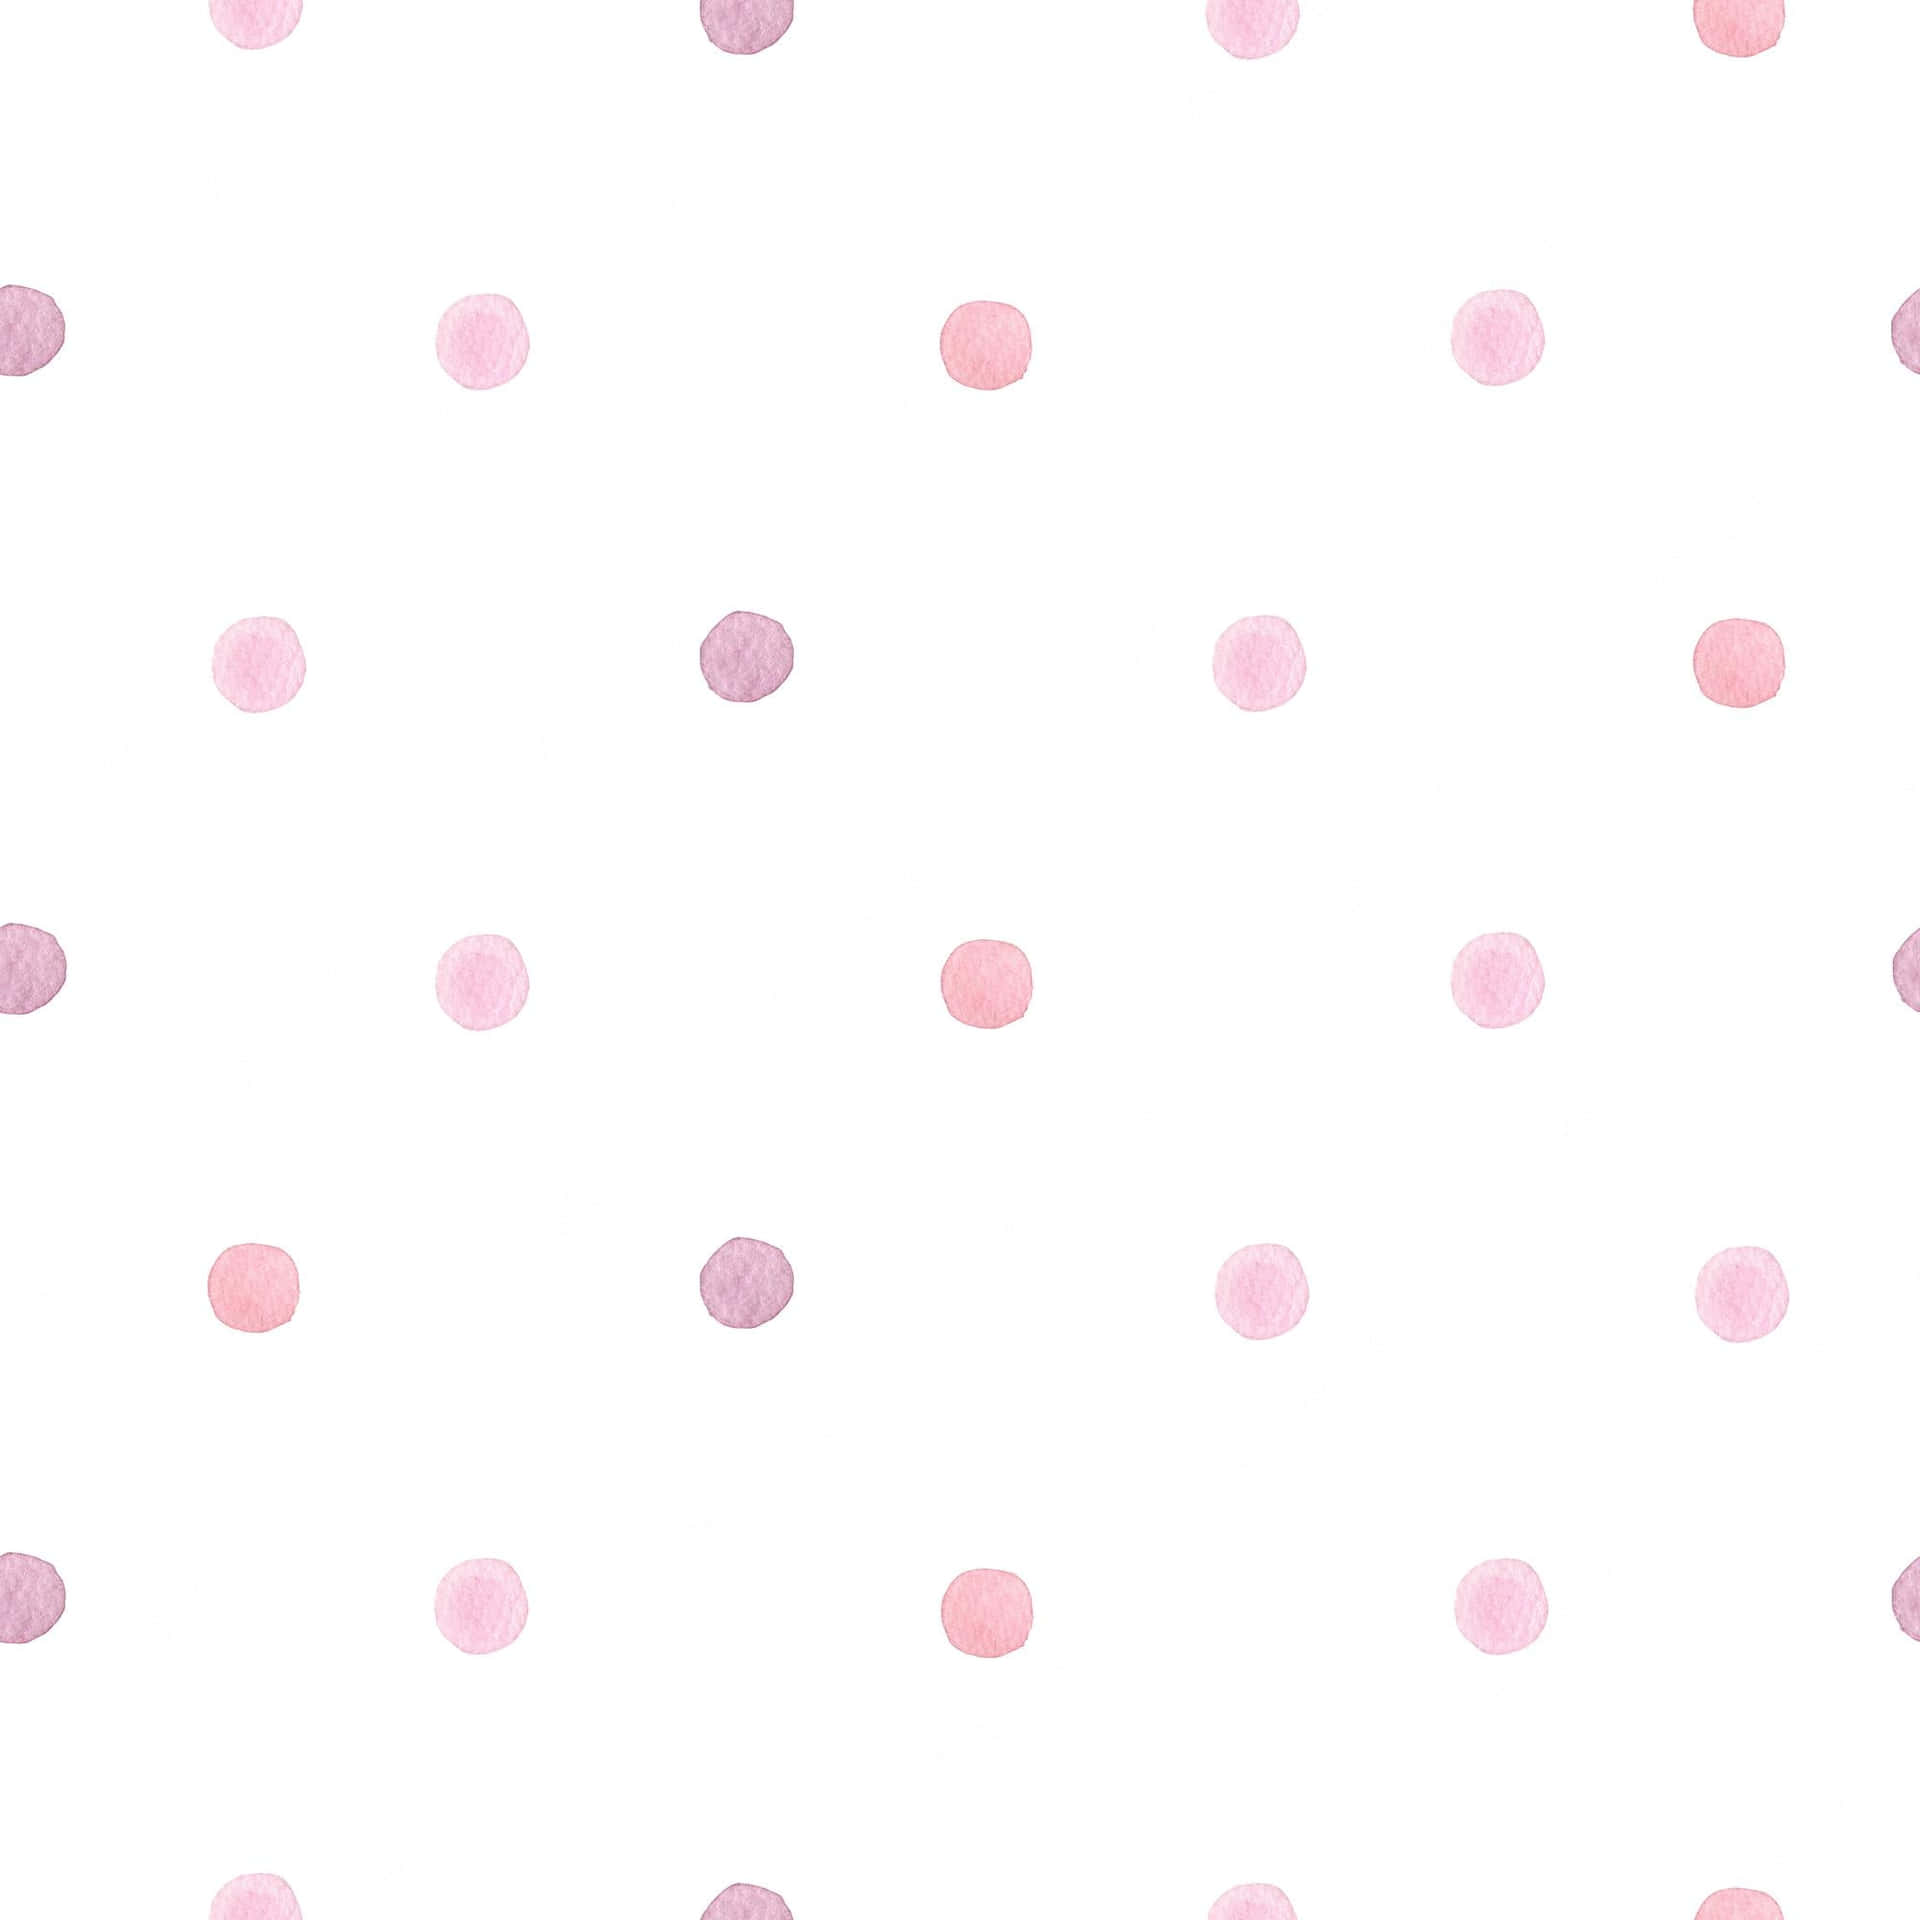 Sanfteund Feminine Rosa Und Weiße Polka Dots Wallpaper